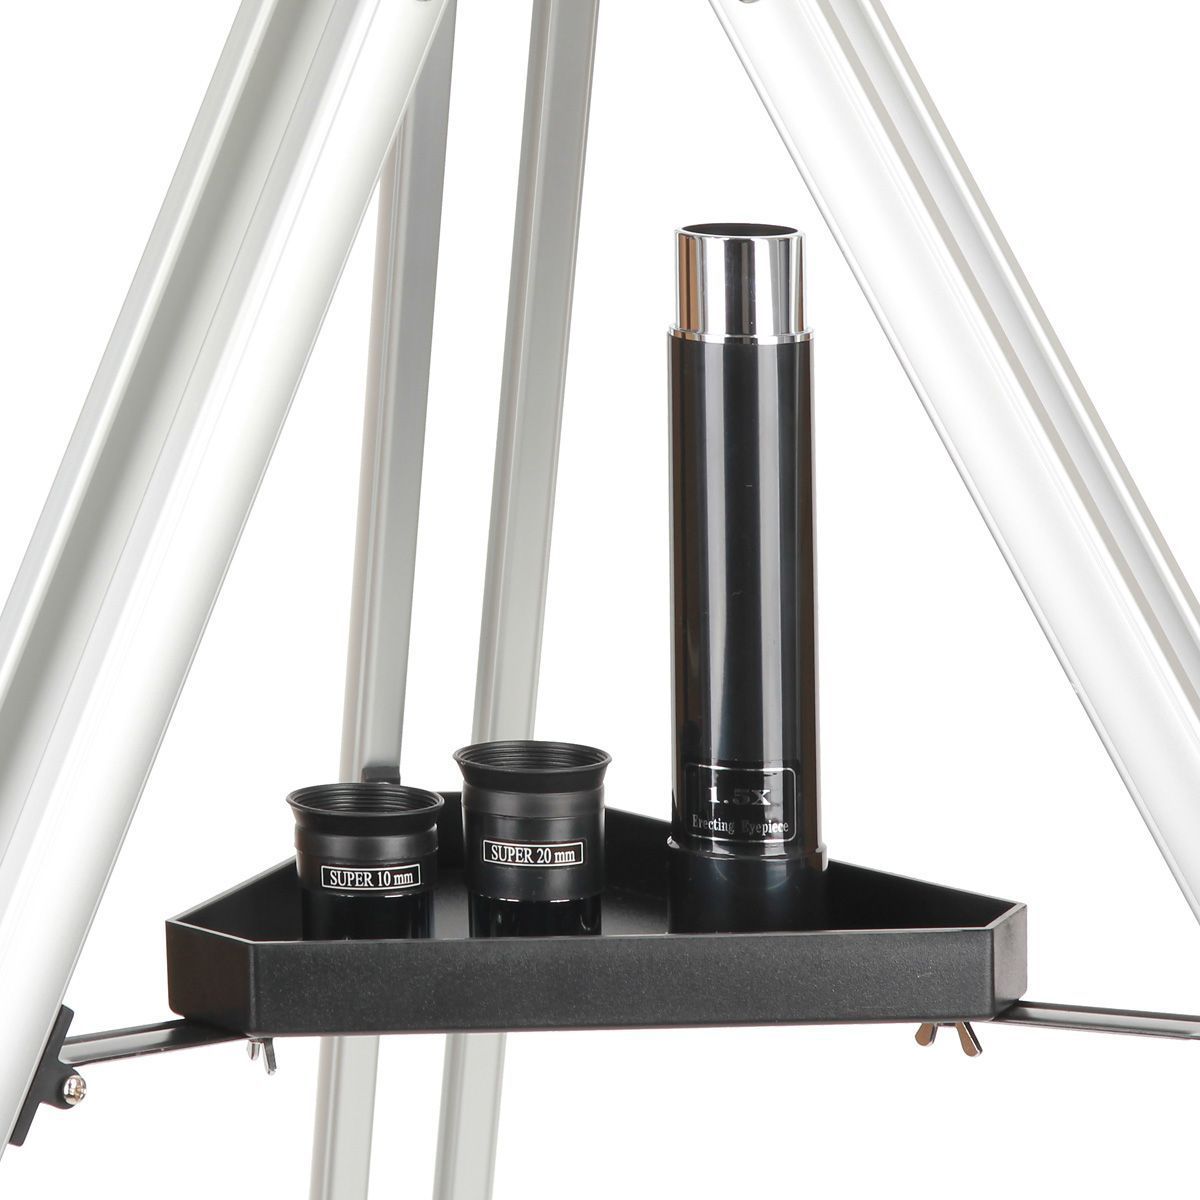 Teleskop Sky-Watcher (Synta) BK607AZ2 (DO.SW-2100)